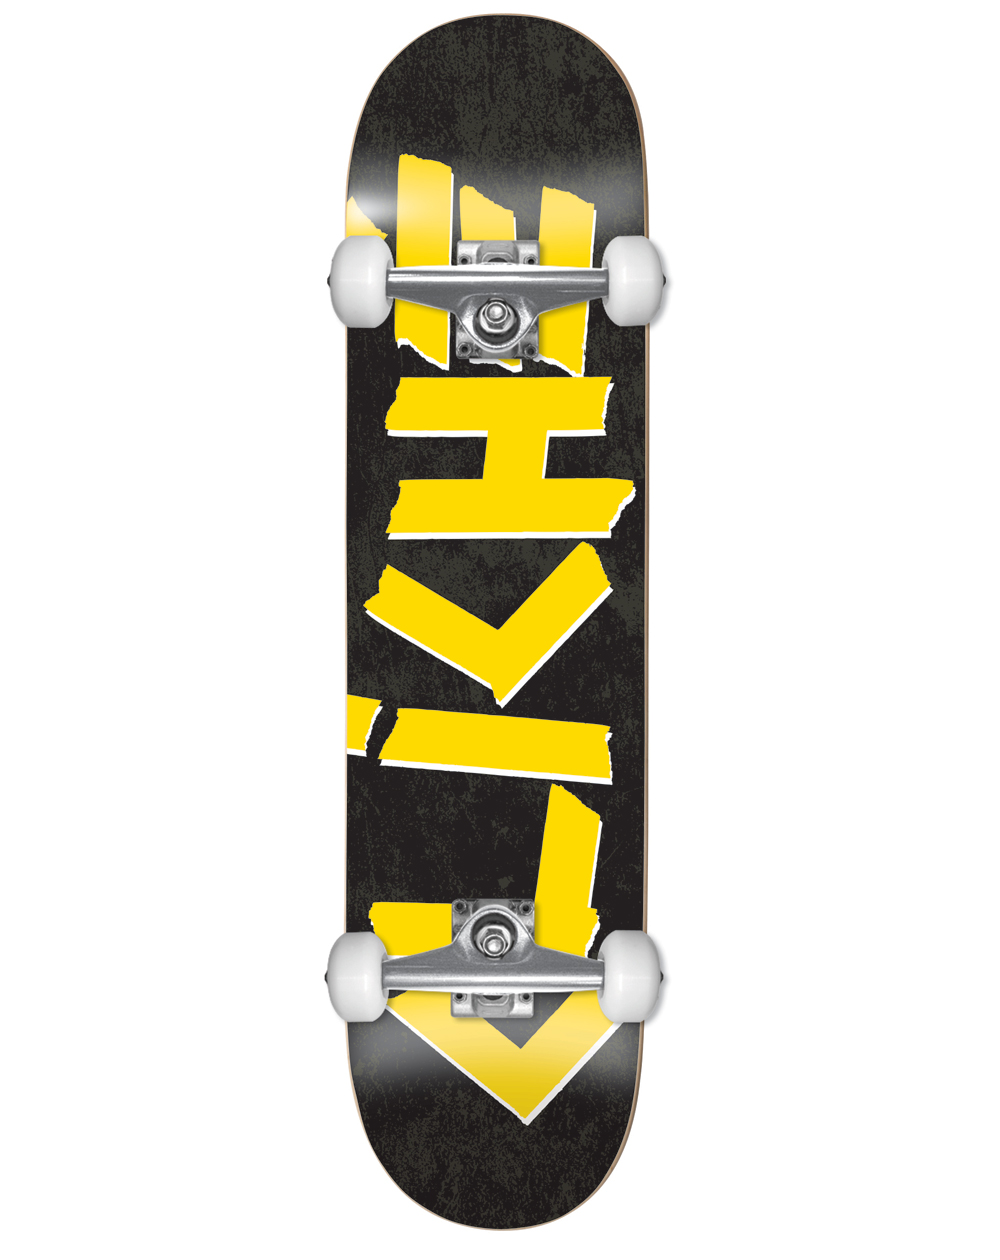 Cliché Skateboard Completo Scotch 7.875" Black/Yellow